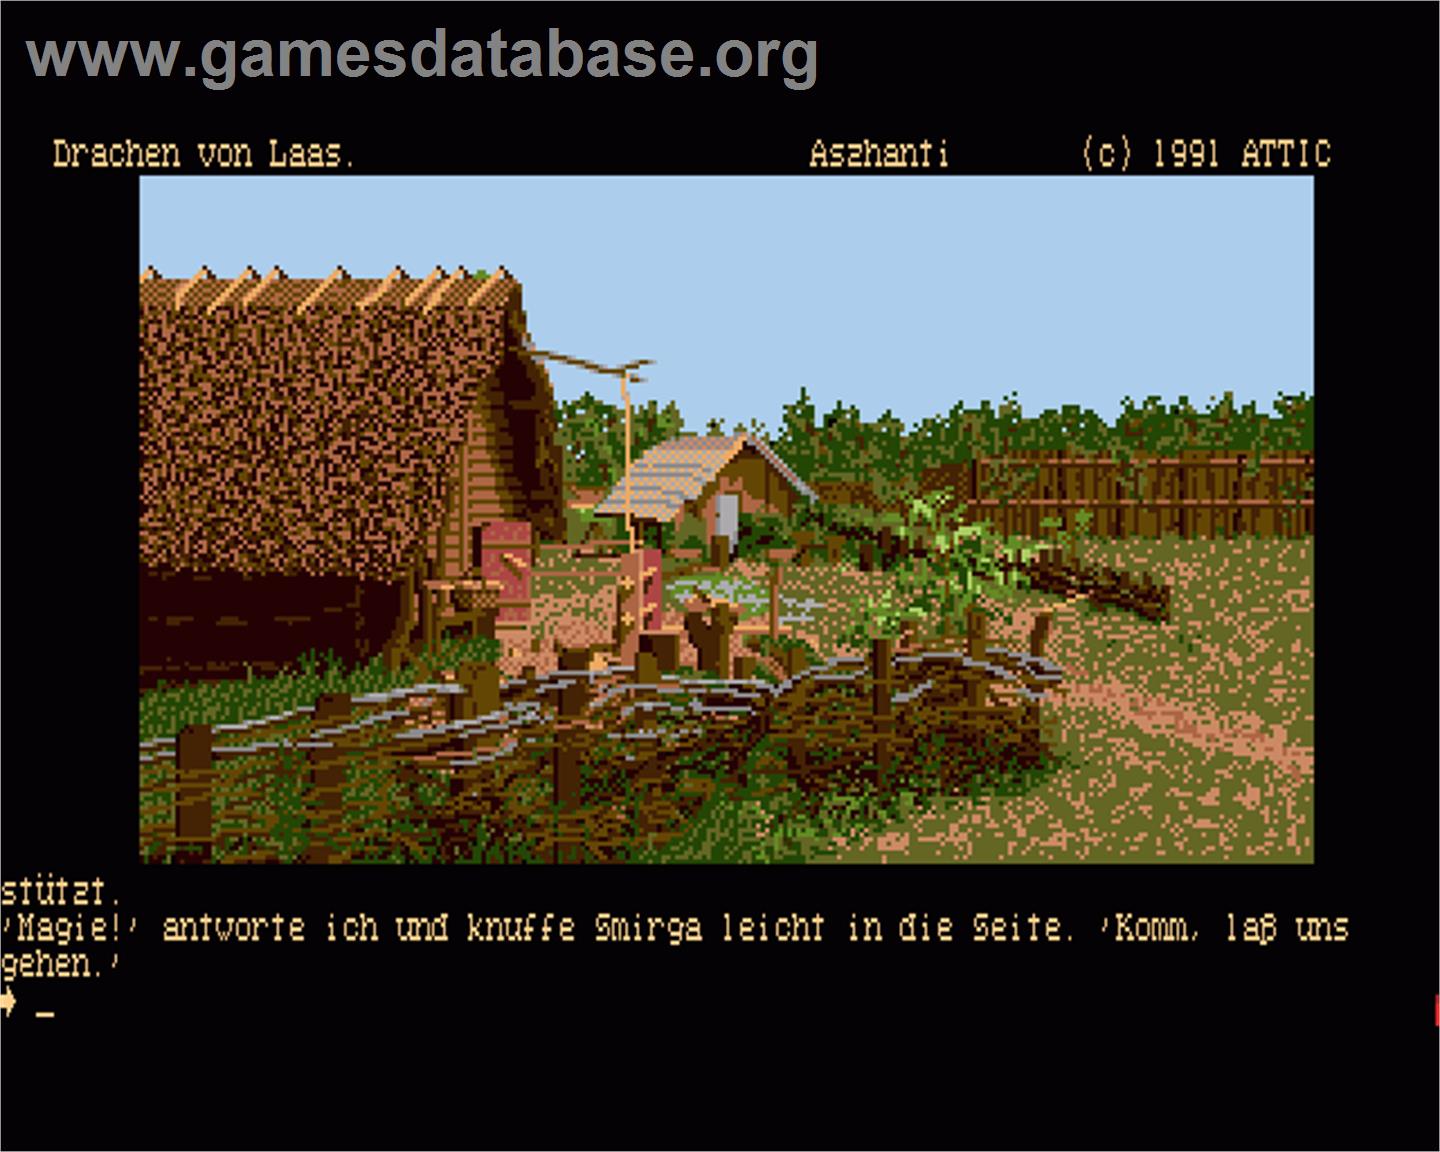 Die Drachen von Laas - Commodore Amiga - Artwork - In Game